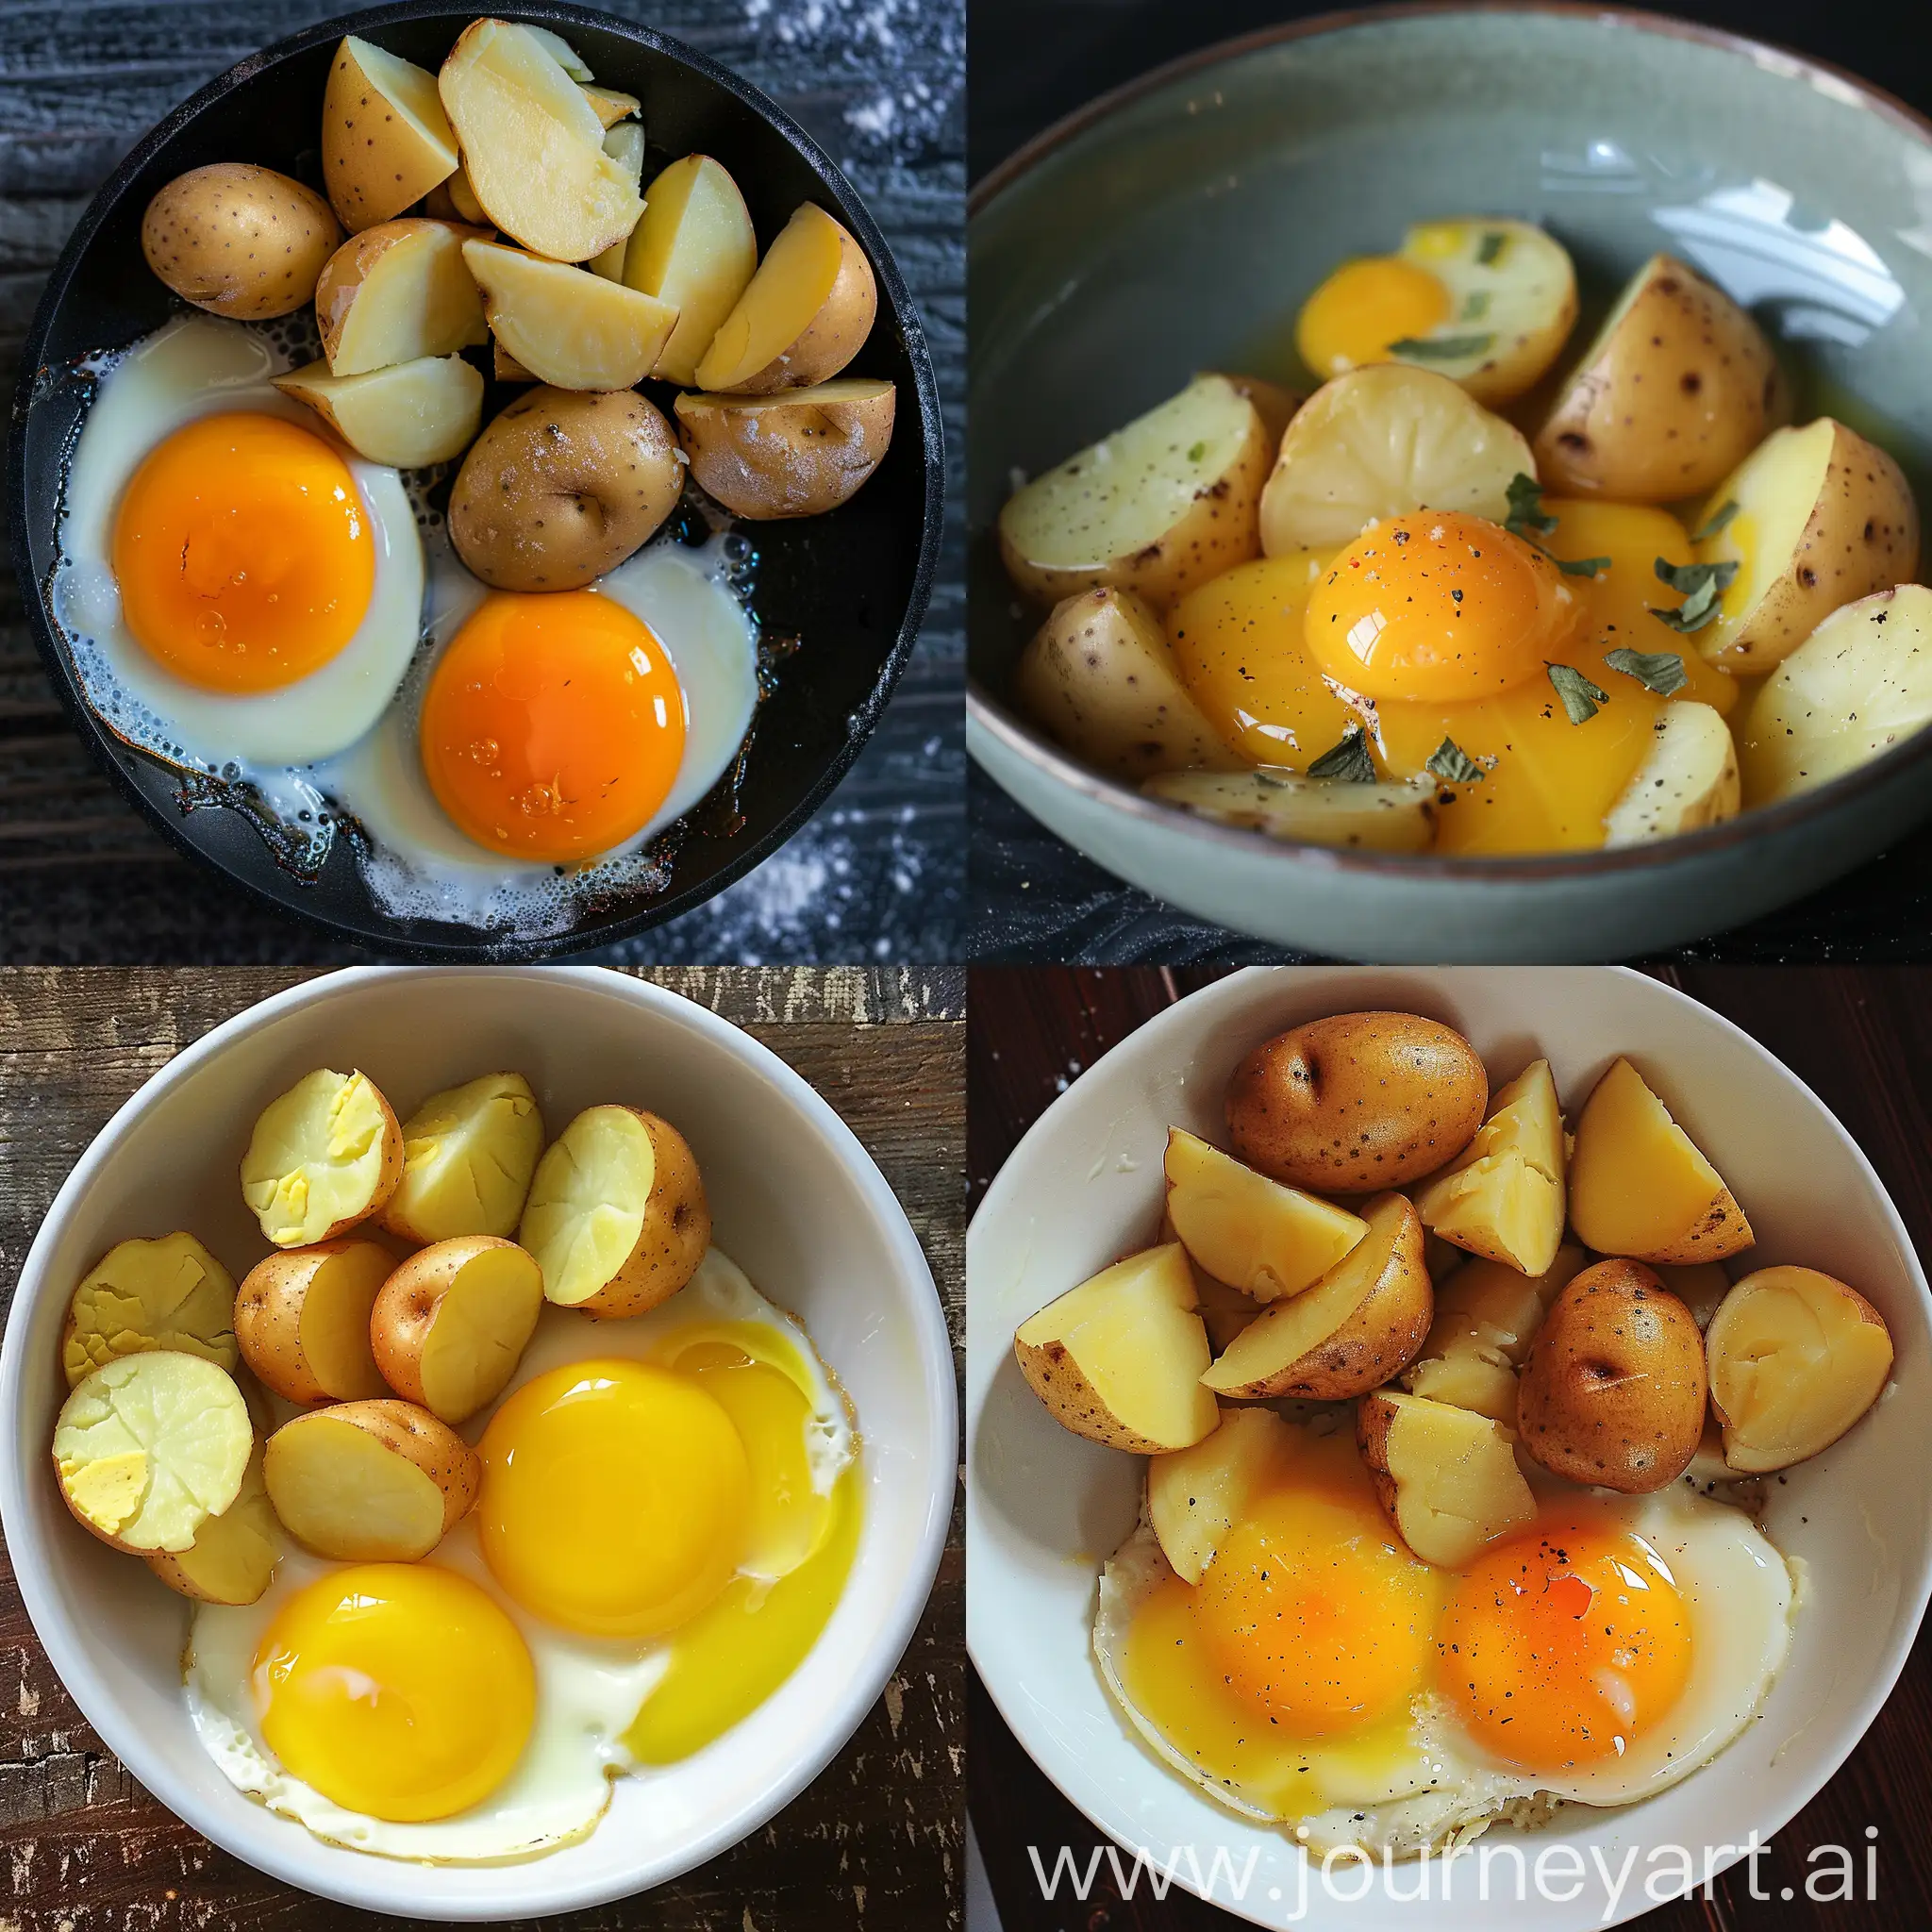 Potatoes-vs-Eggs-An-Unconventional-Battle